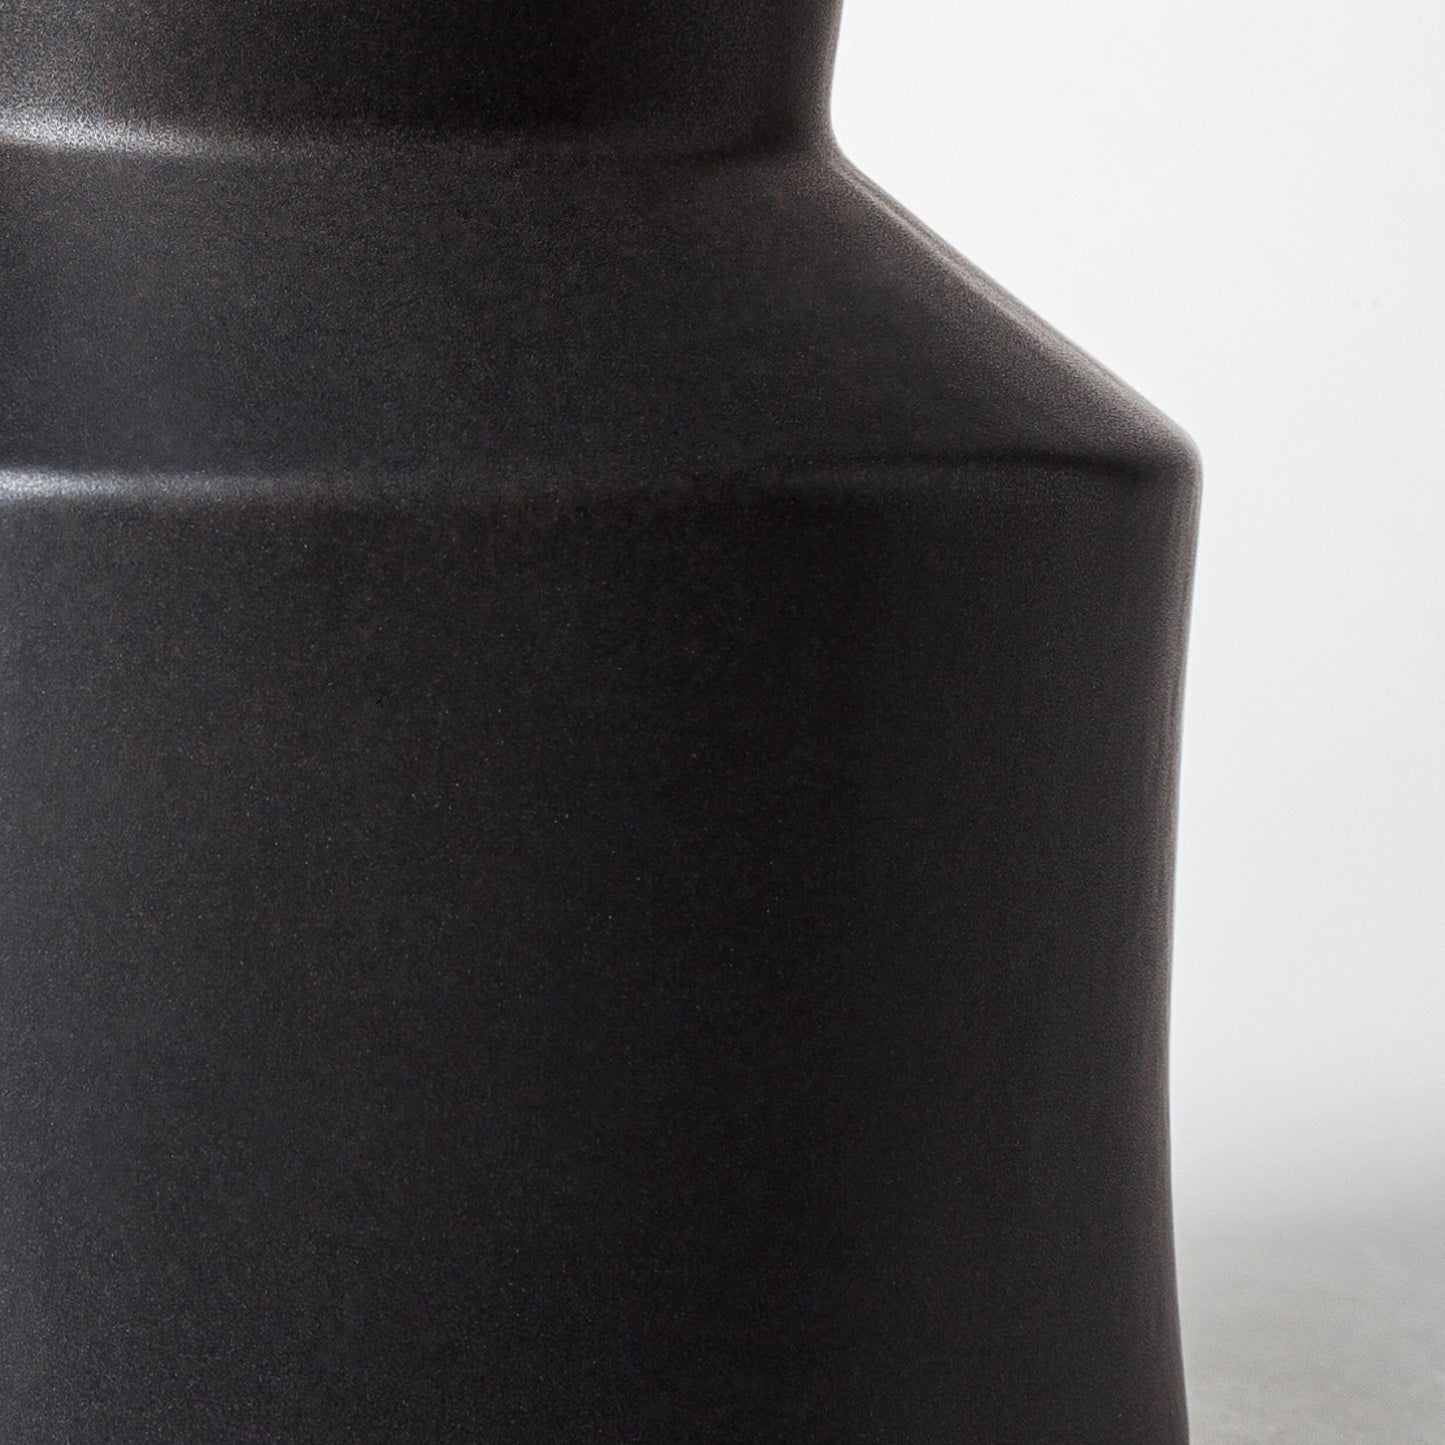 Laforge Black Ceramic Vase